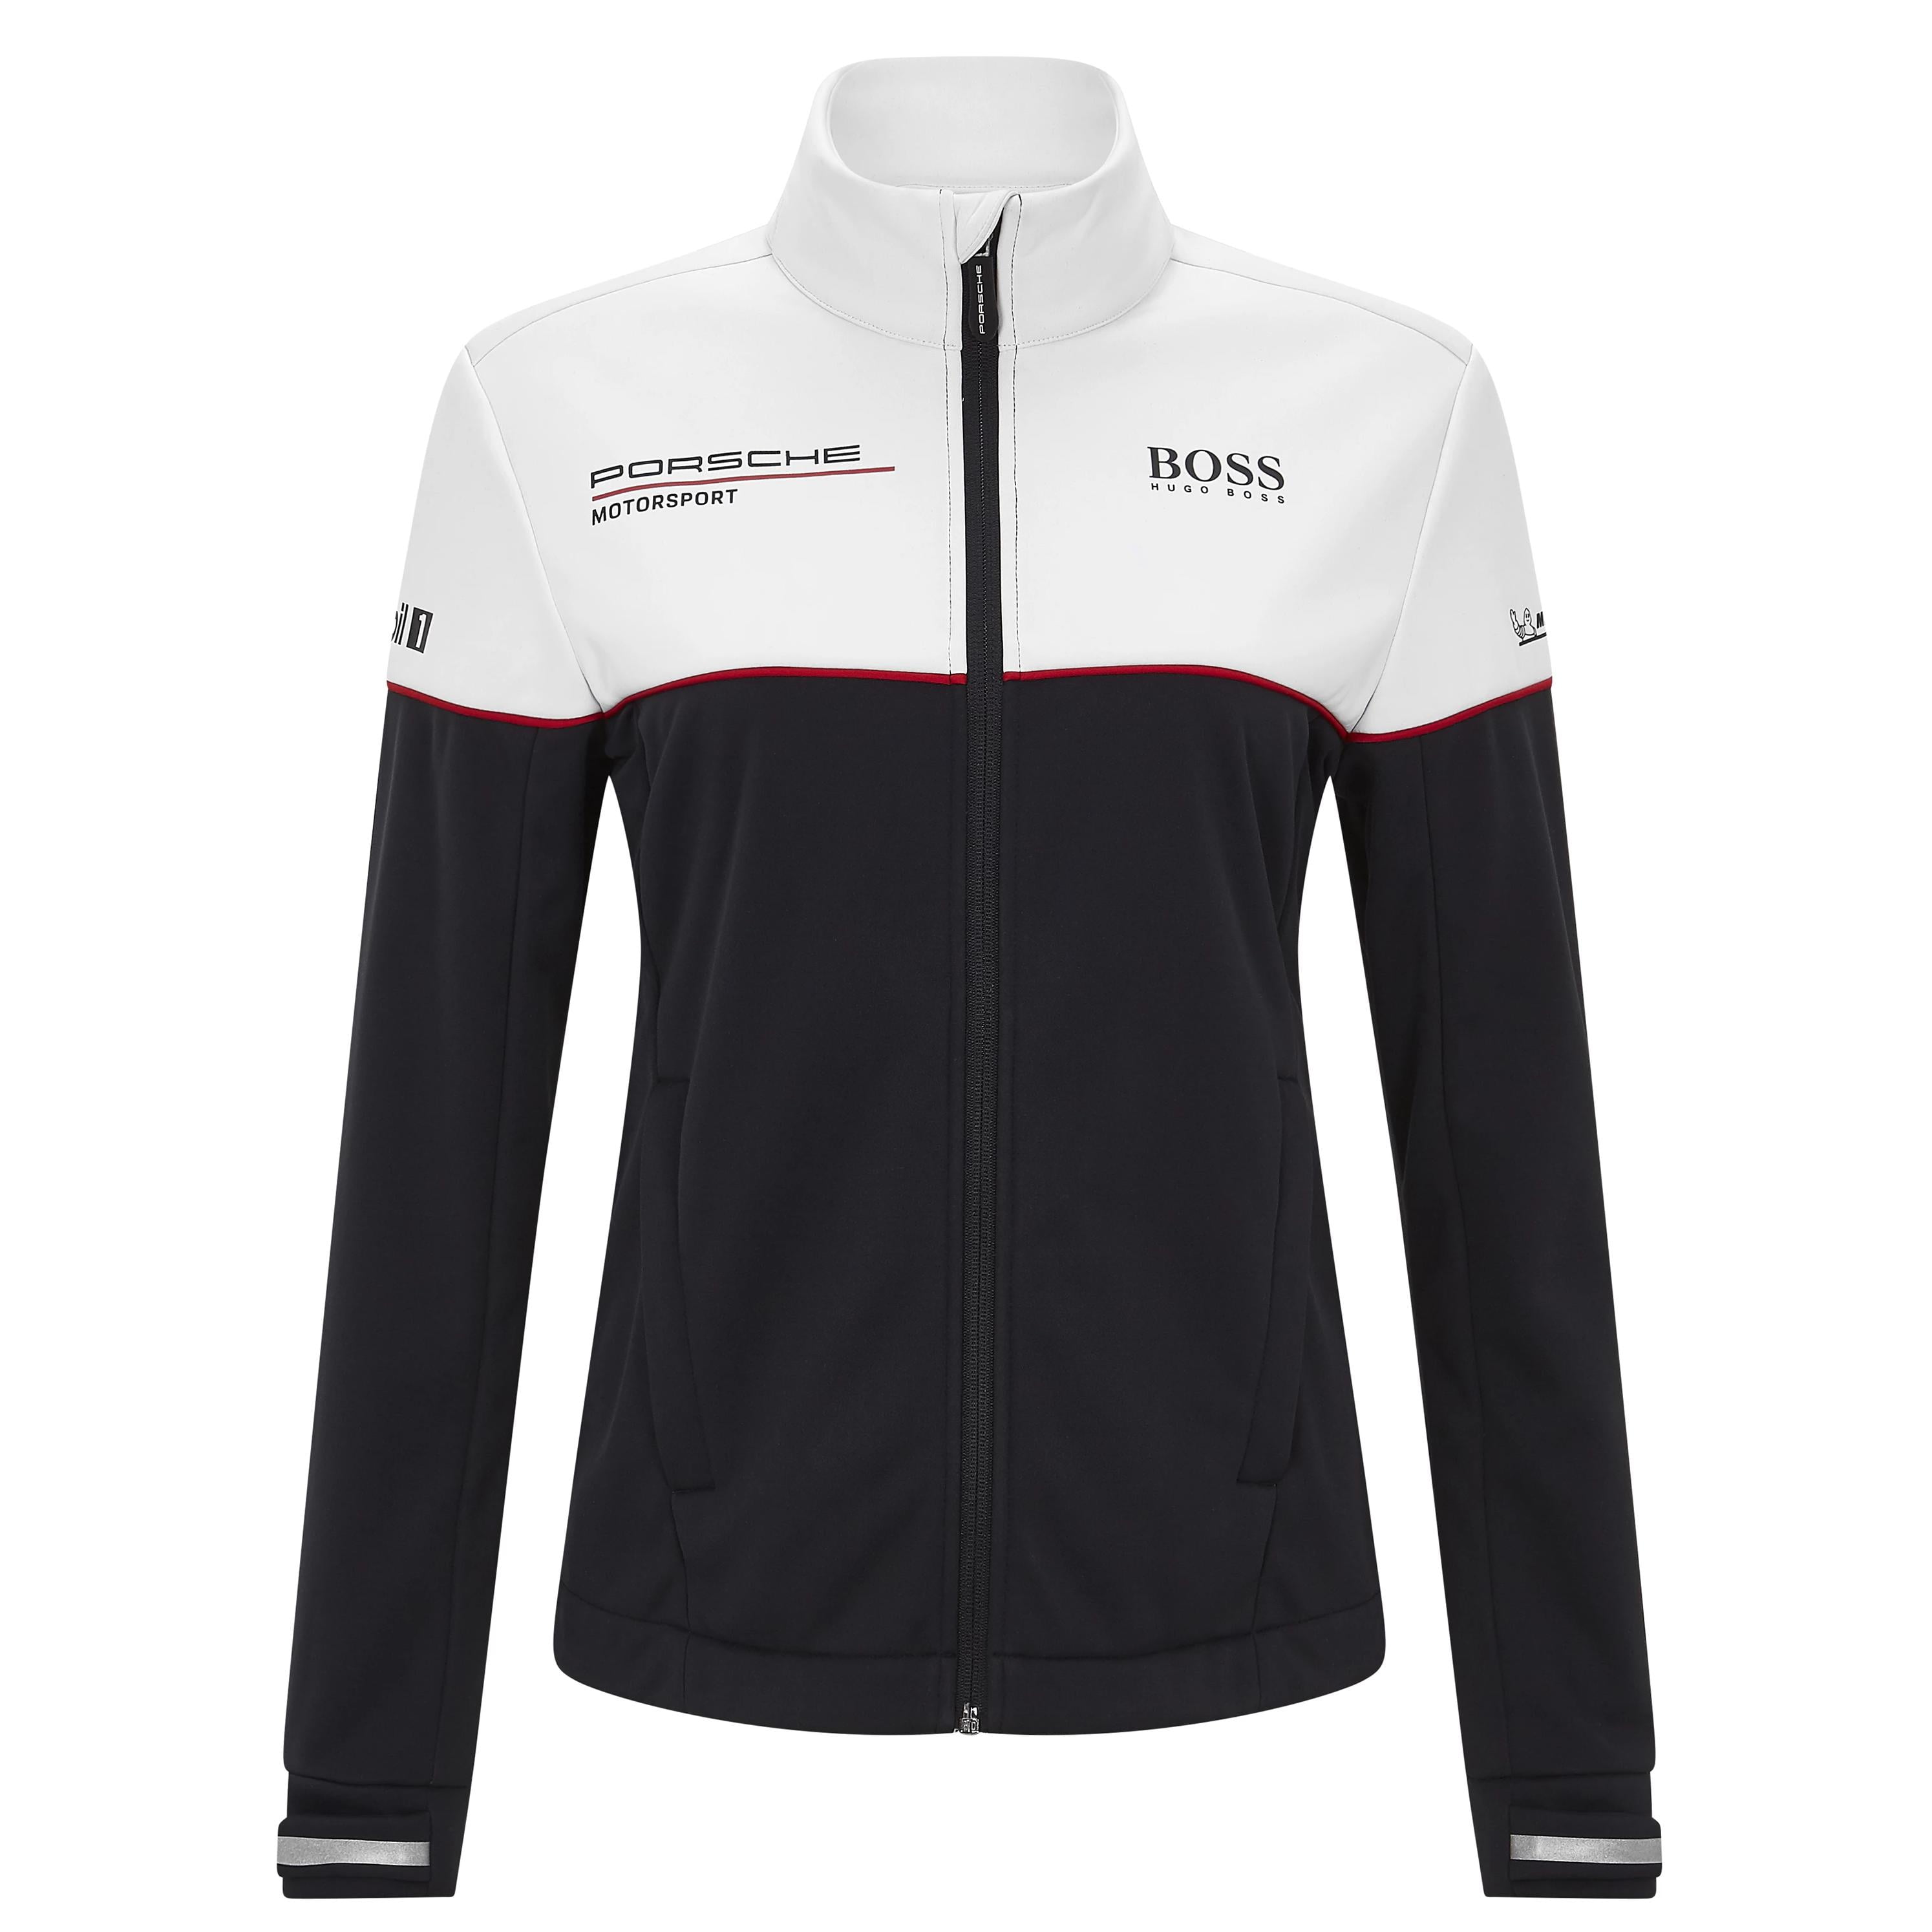 Porsche Motorsport Women's Team Softshell Jacket Black/White - Walmart.com